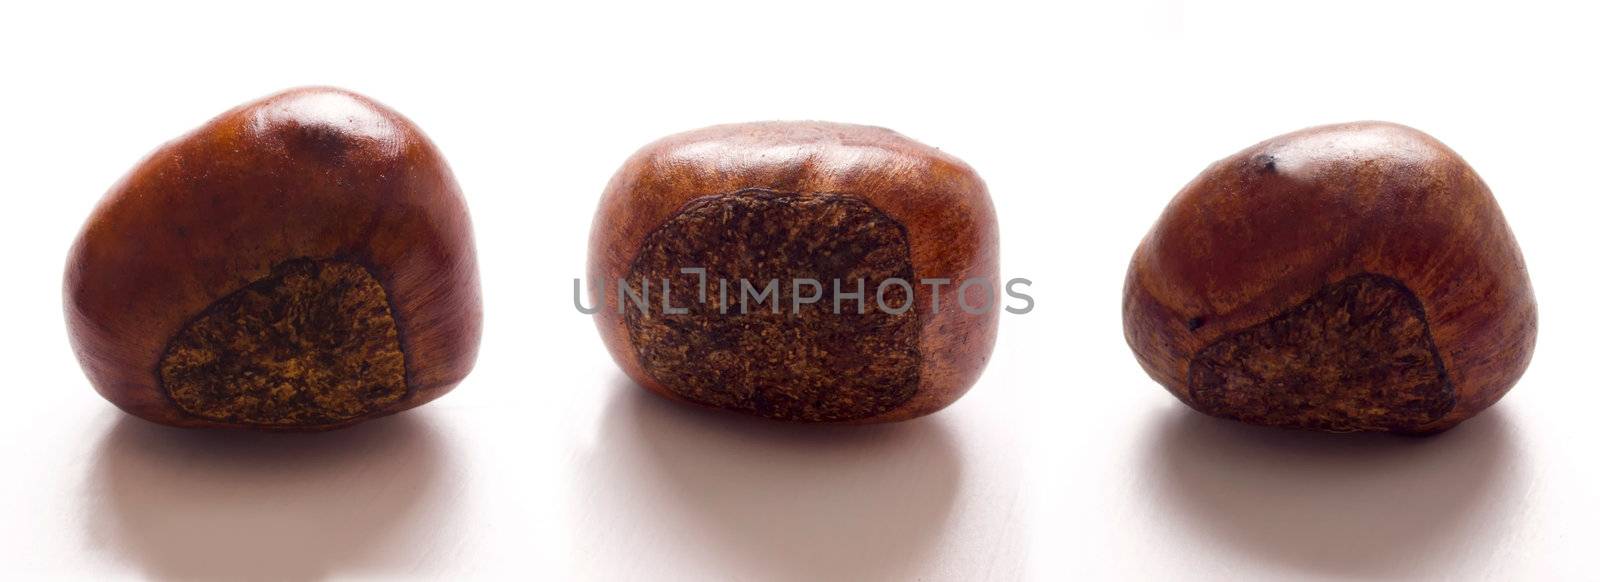 roasted chestnuts by zkruger